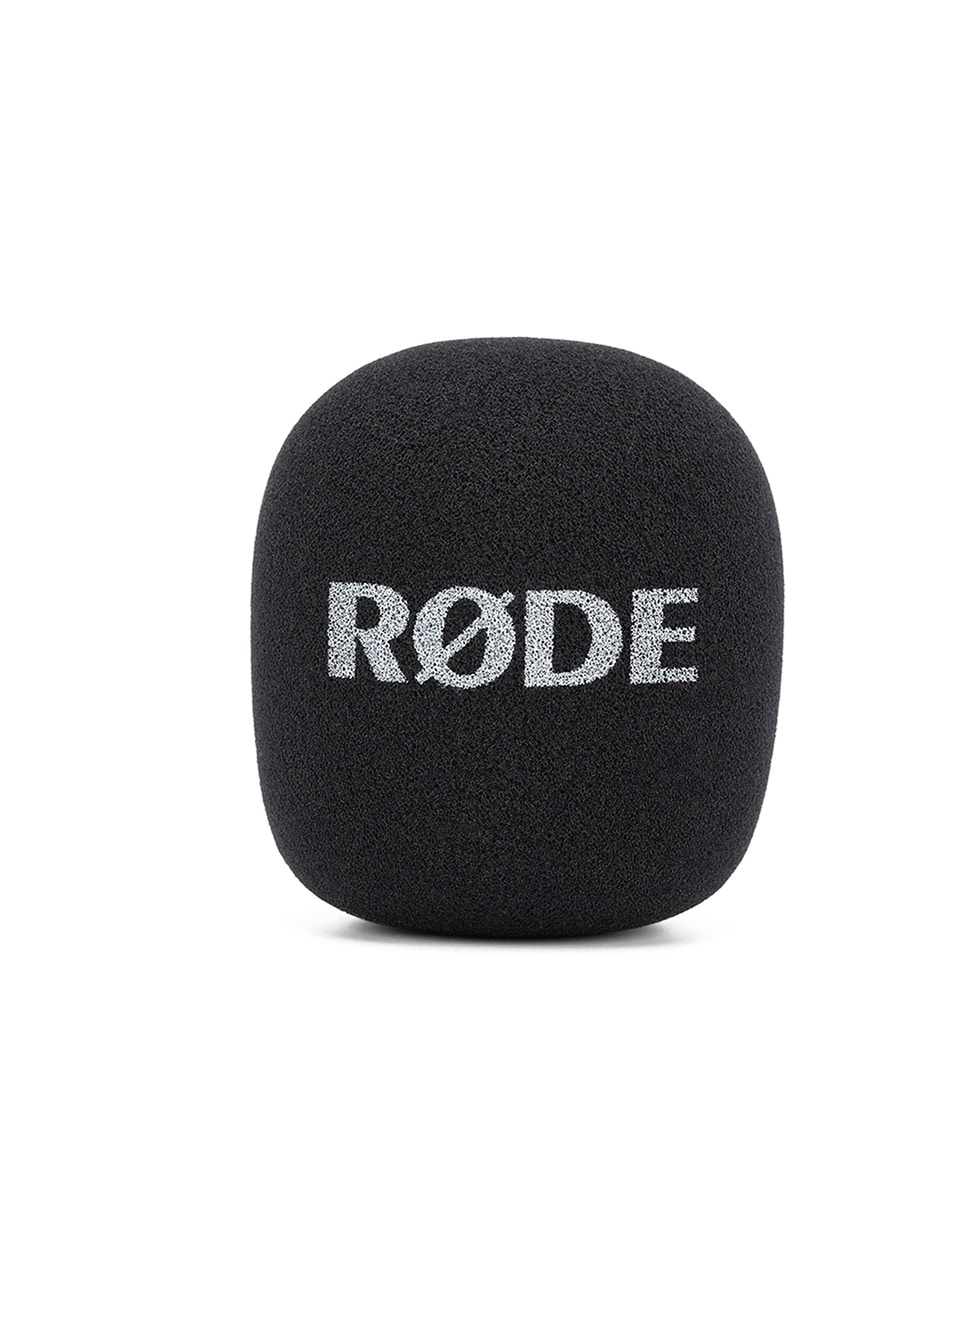 Röde Interview GO handle and Pop for Wigo